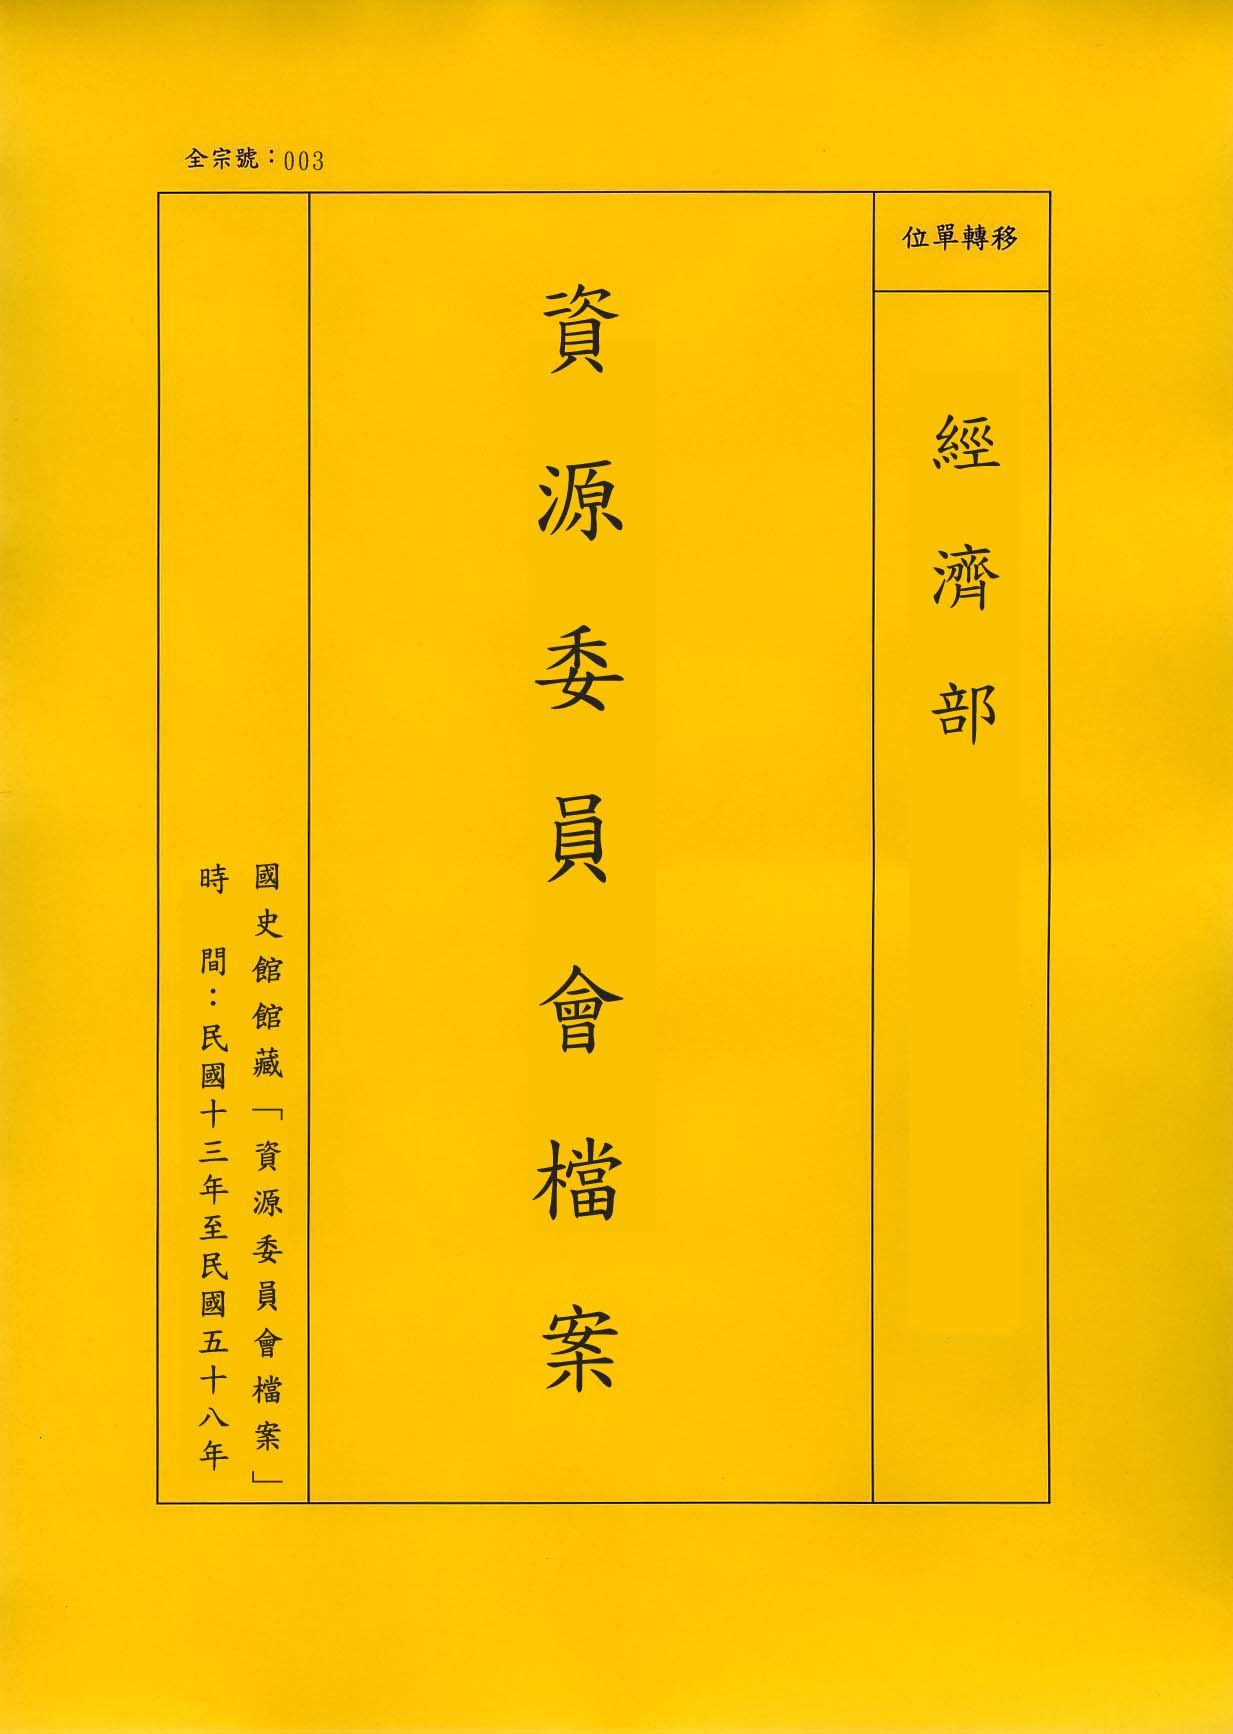 卷名:絲織工廠調查表─上海(三)(003-010306-0215)